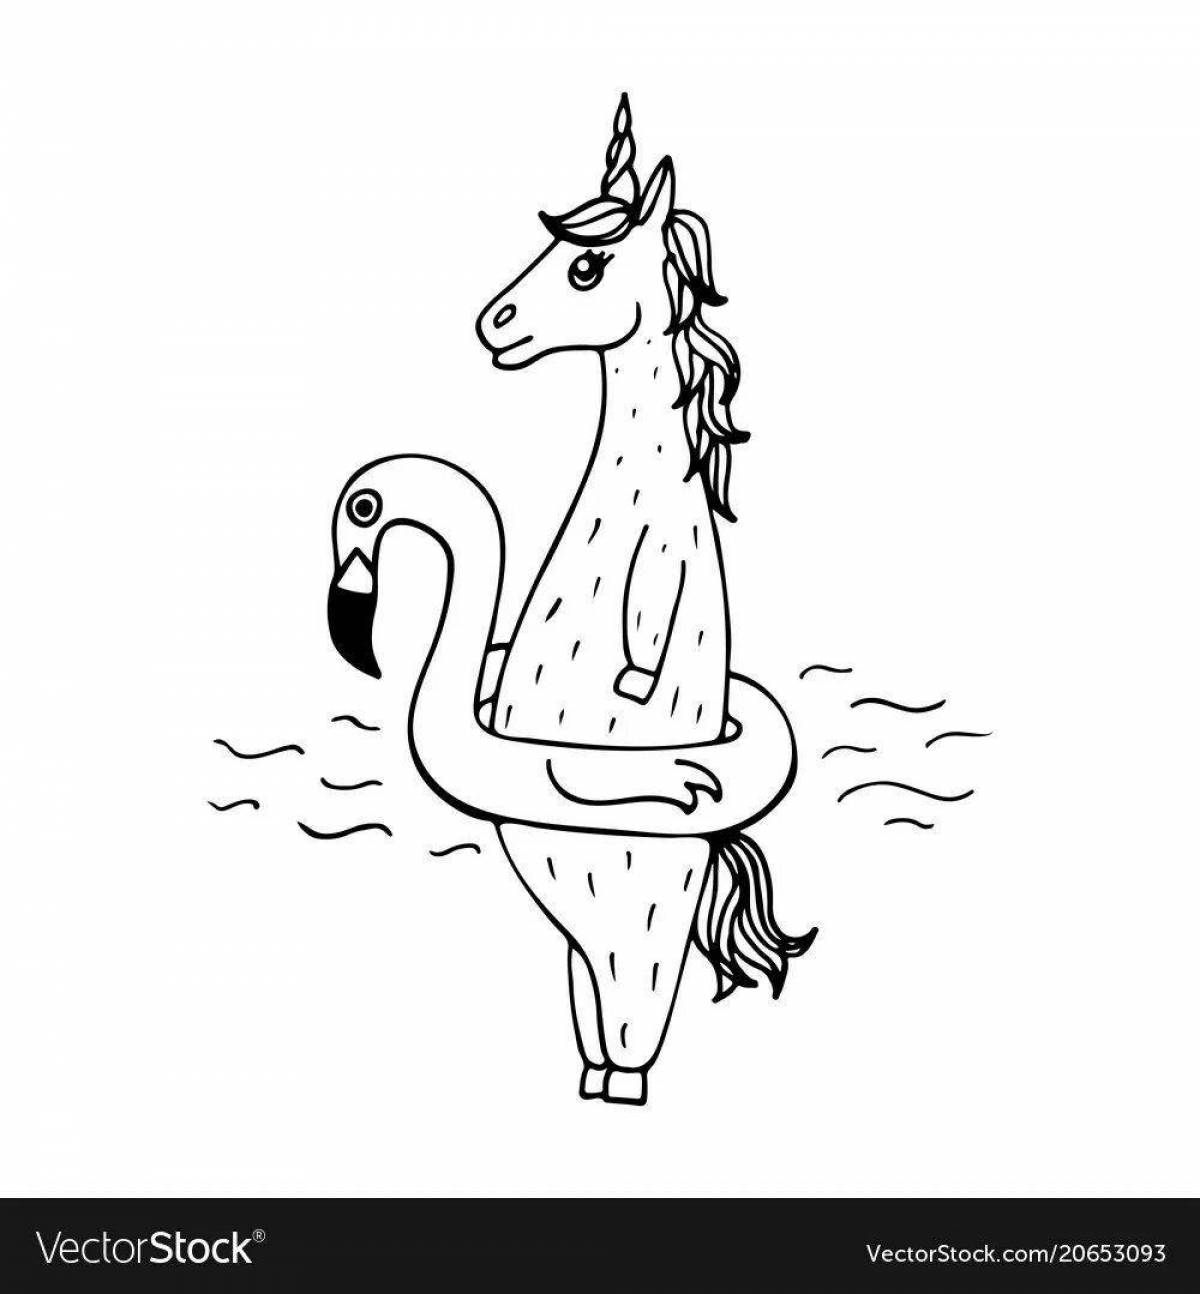 Exquisite llama unicorn coloring book